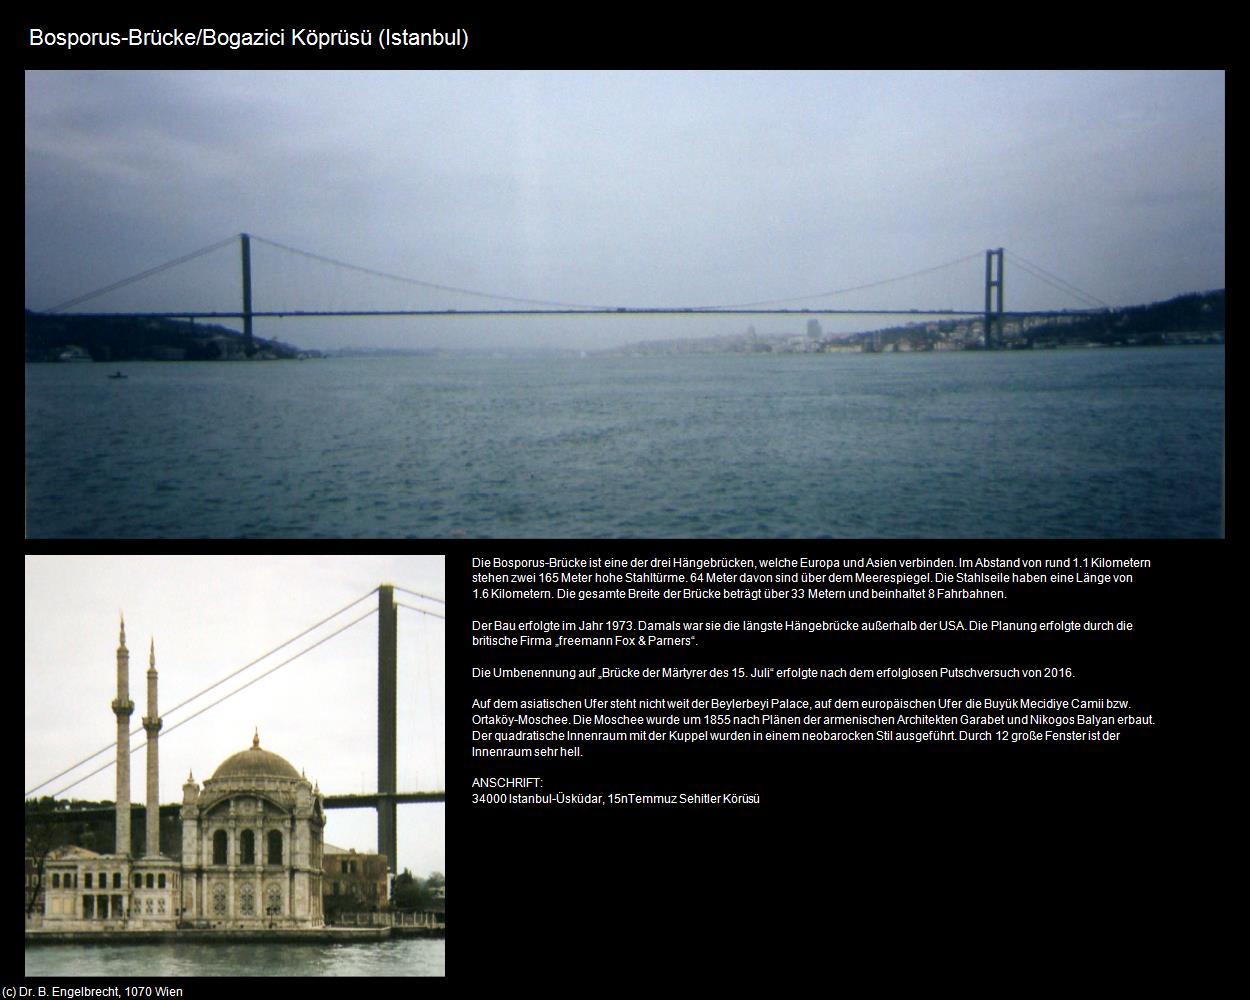 Bosporus-Brücke/Bogazici Köprüsü (Istanbul) in TÜRKEI